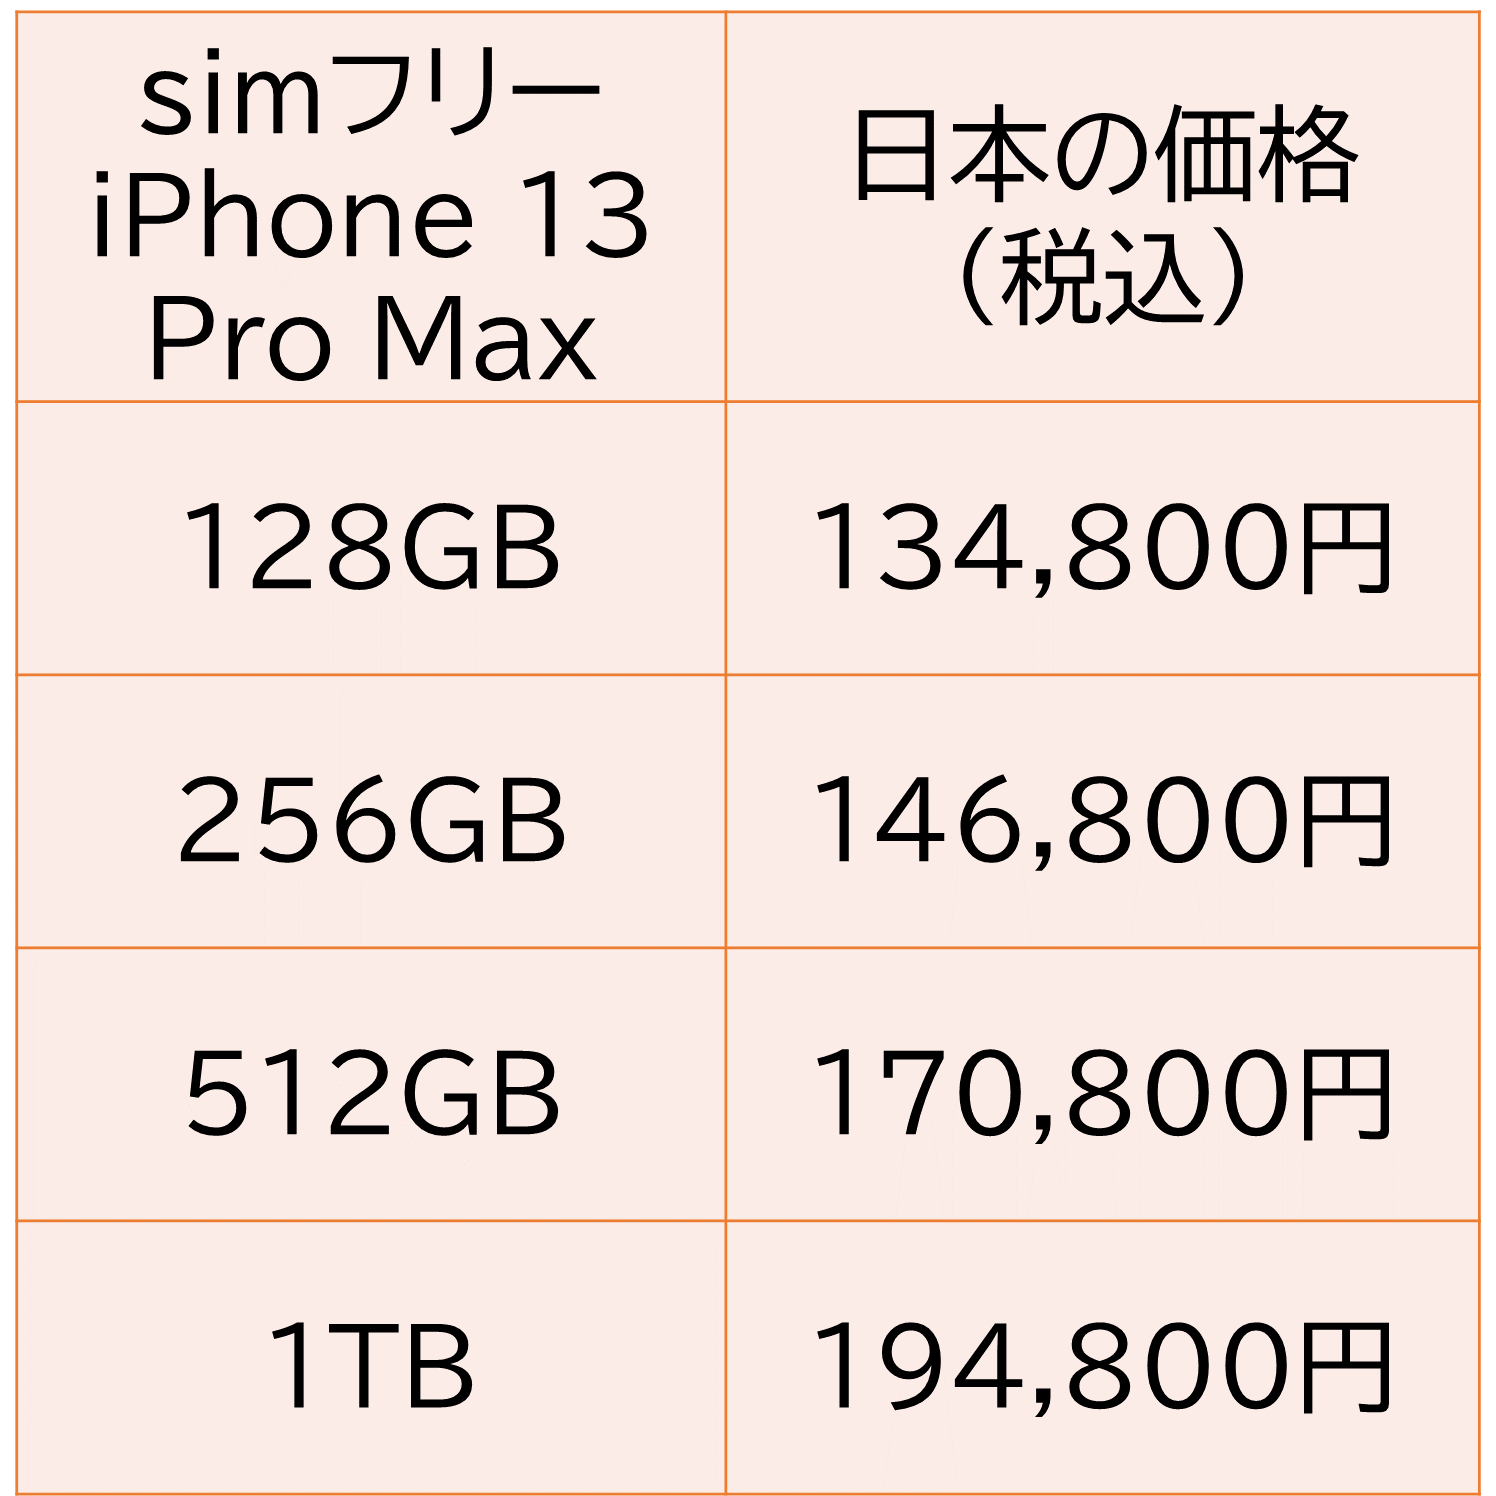 simフリーiPhone 13ProMax 第三世代の販売価格